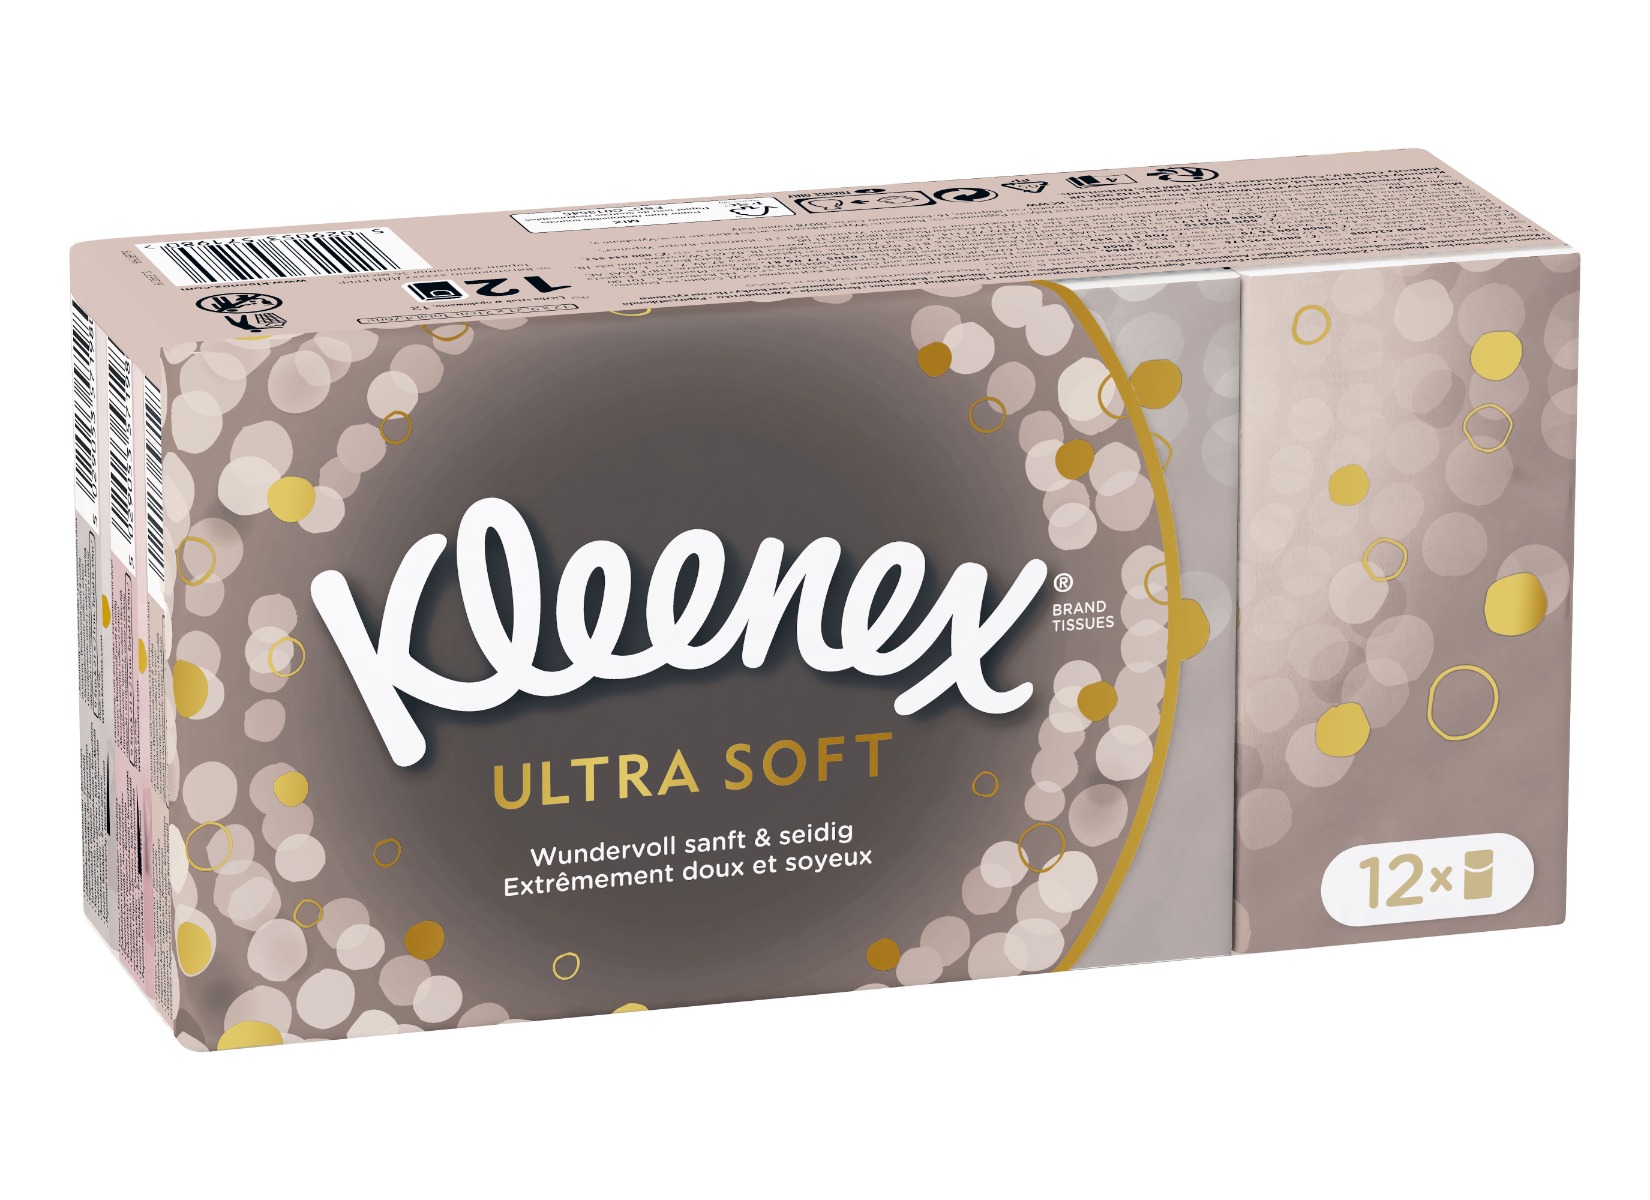 Kleenex Ultra Soft papírové kapesníky 12x9 ks Kleenex